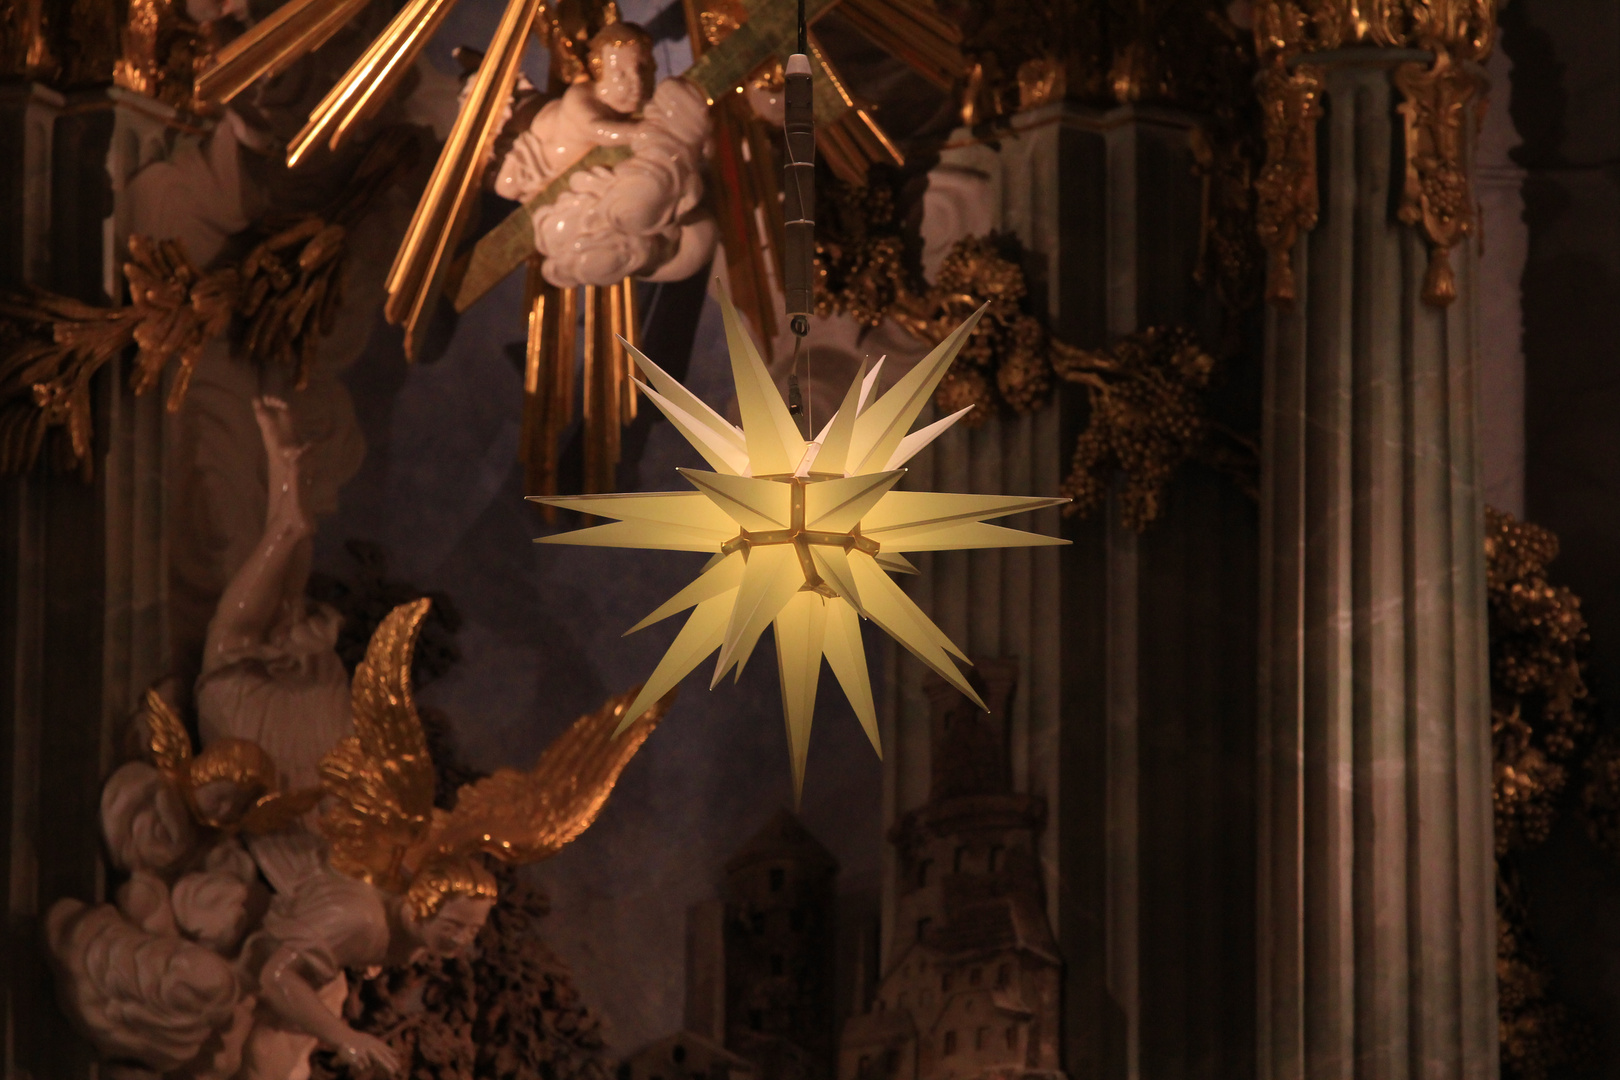 Der Stern über dem Altar...